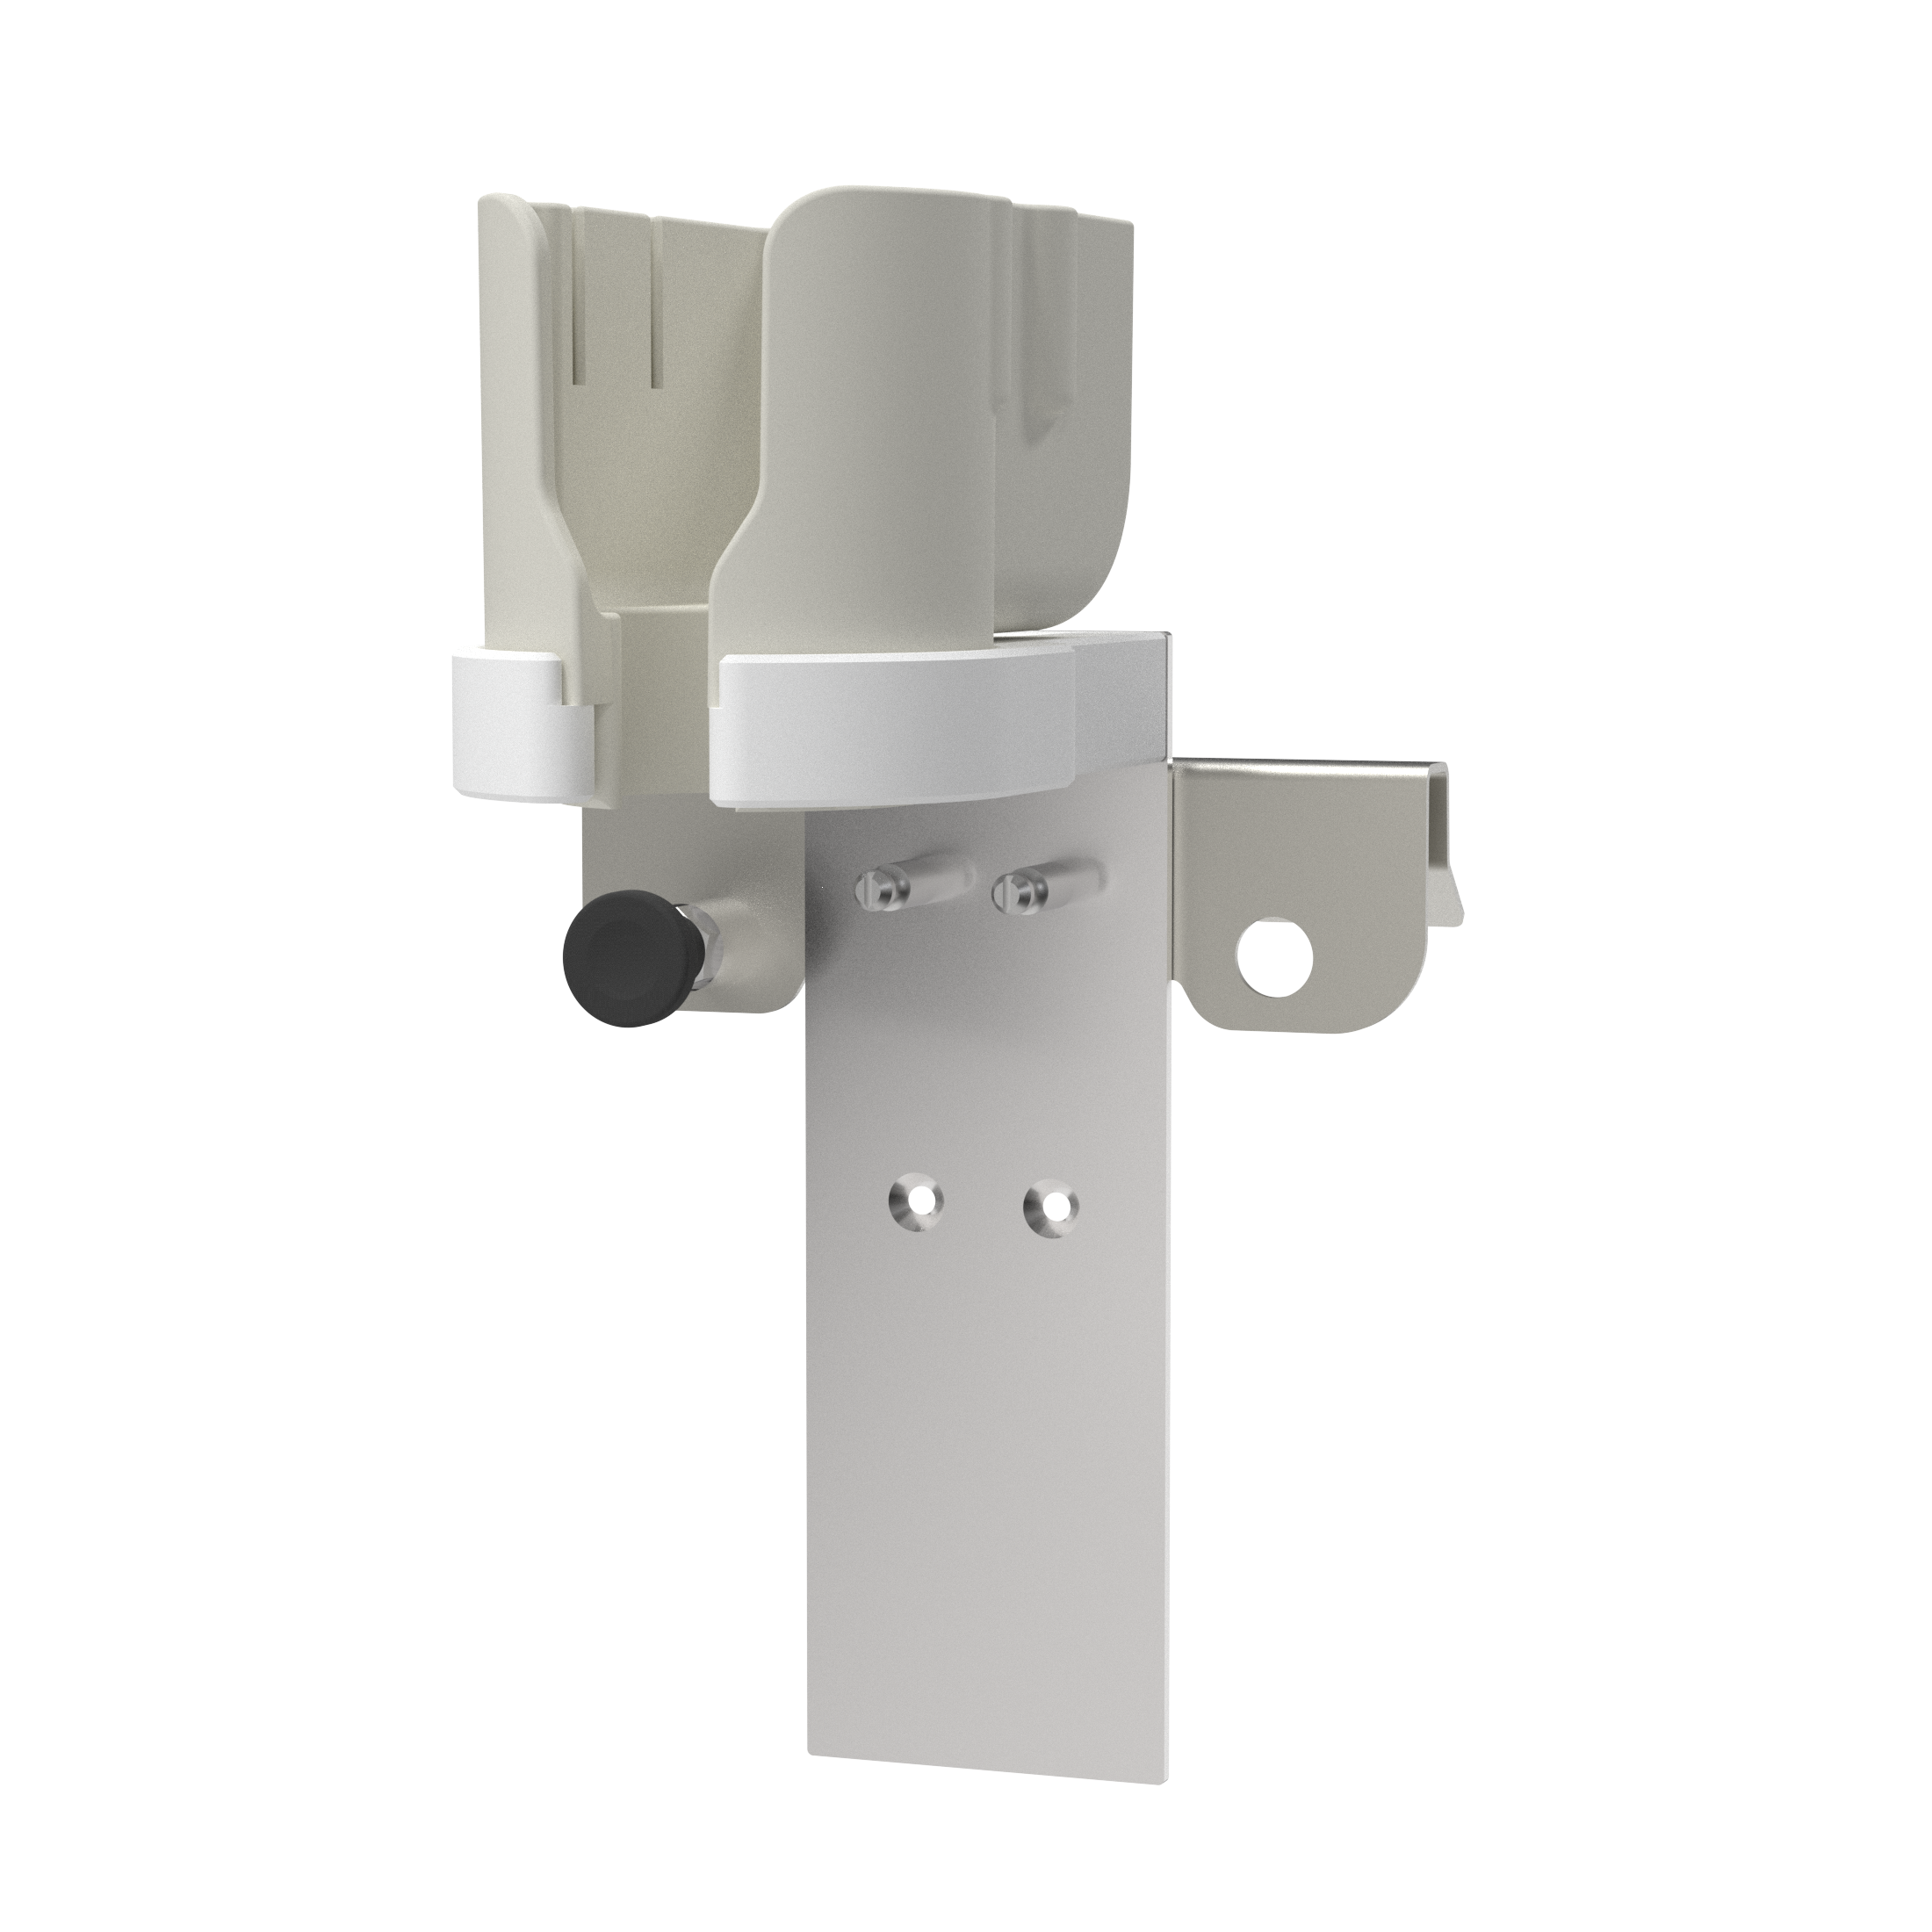 Plug holder TU, with optional plug protection 